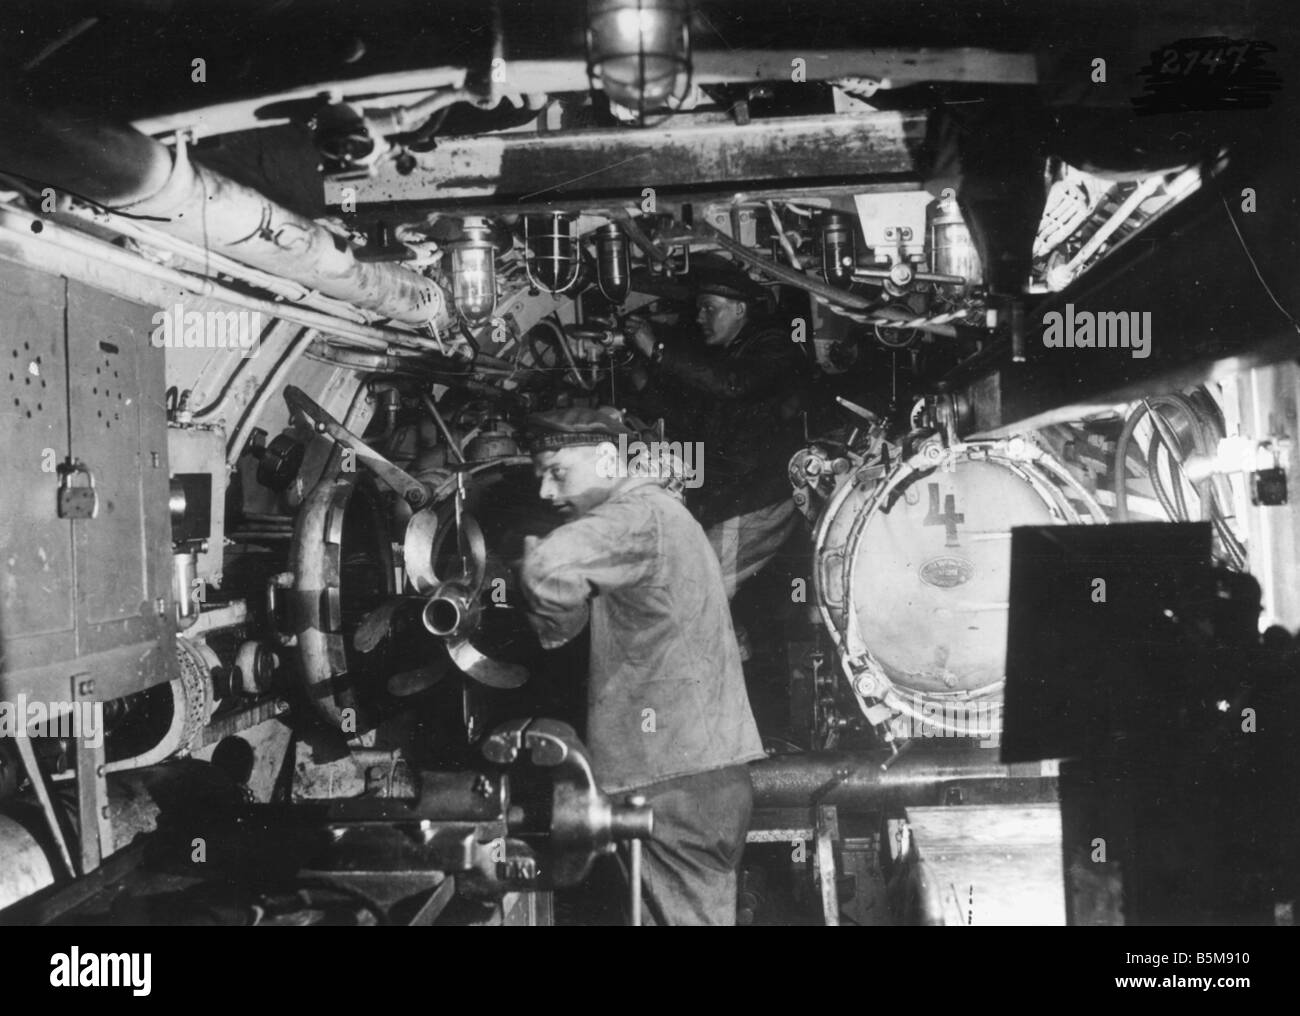 Maschinenraum von einem deutschen U-Boot C 1915 Geschichte Weltkrieg Krieg am Meer Blick auf den Maschinenraum eines deutschen U-Boot-Foto c 1915 Stockfoto